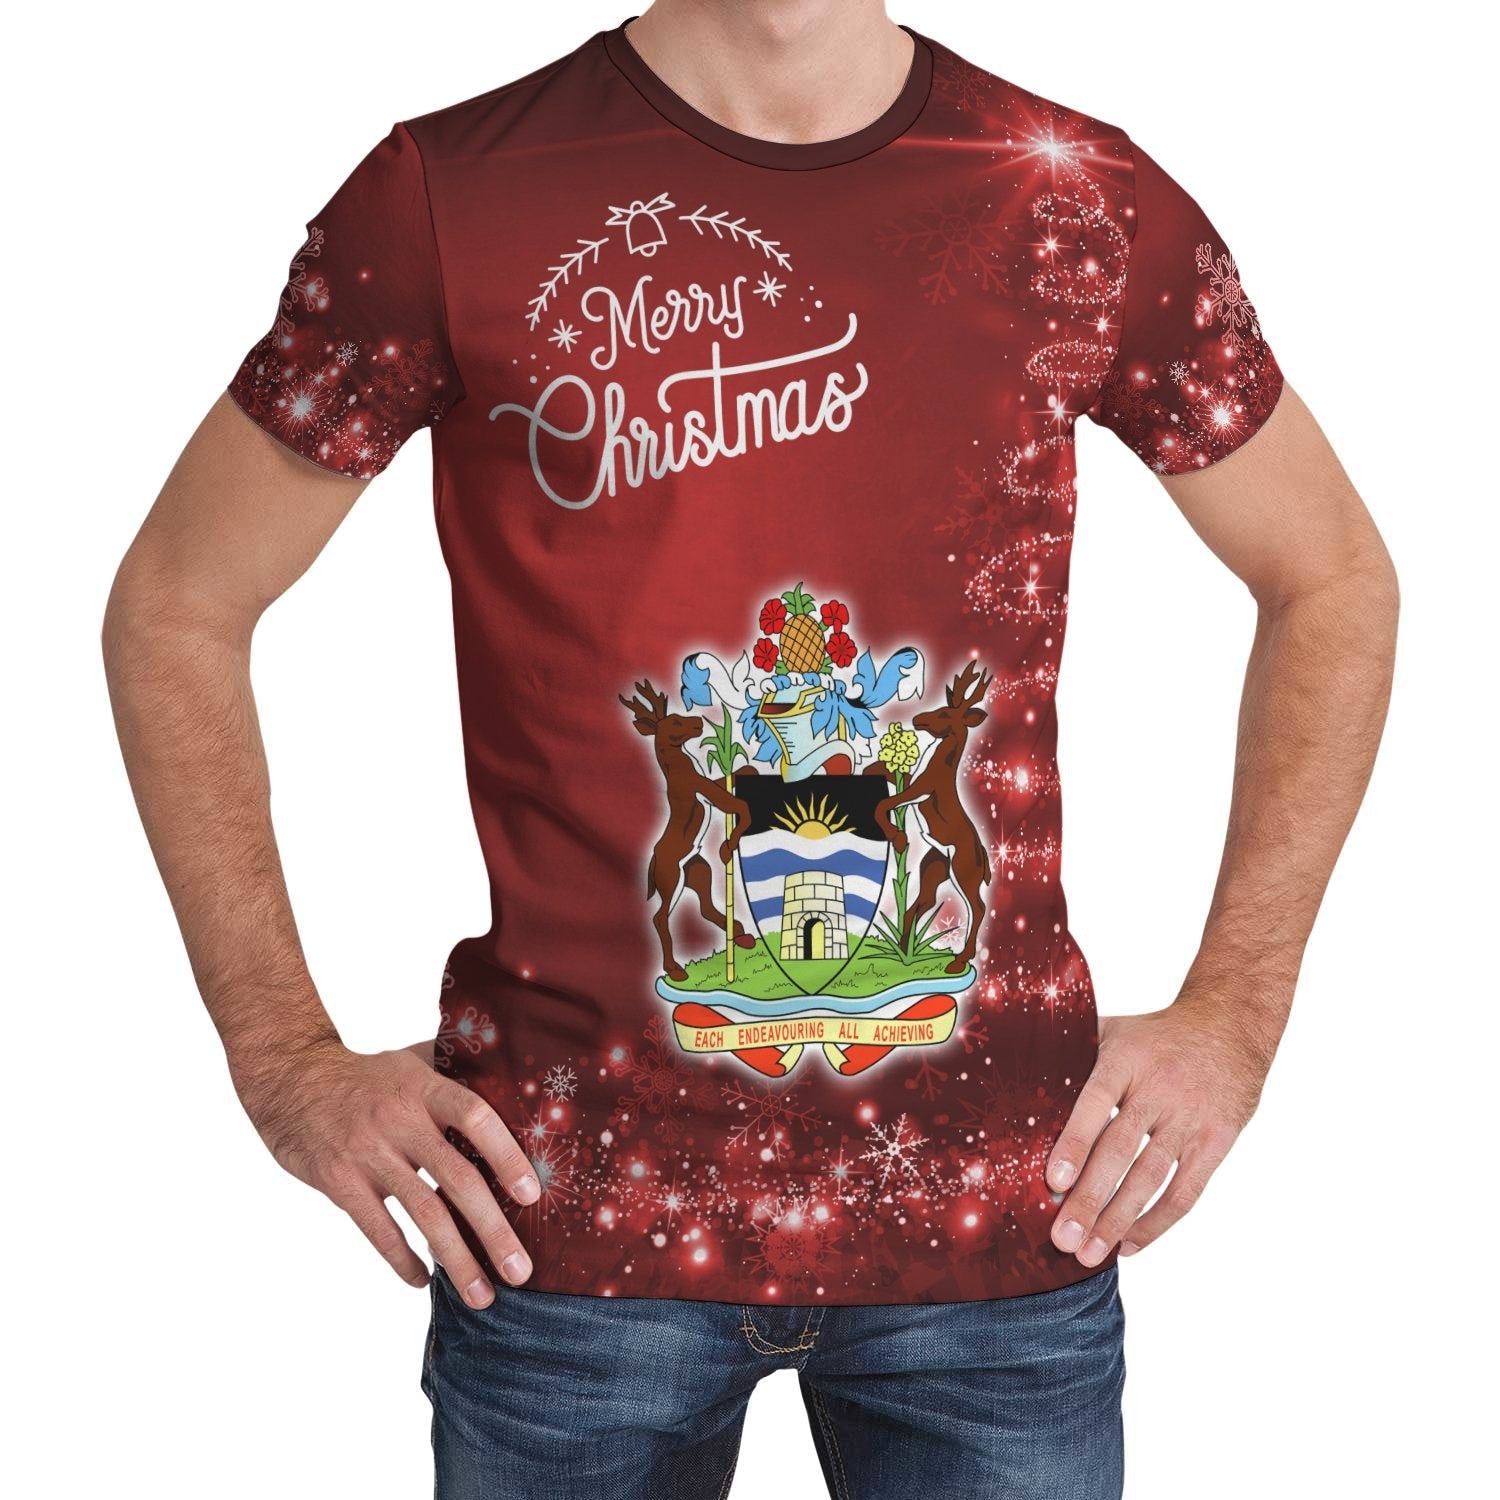 antigua-and-barbuda-christmas-t-shirt-womensmens